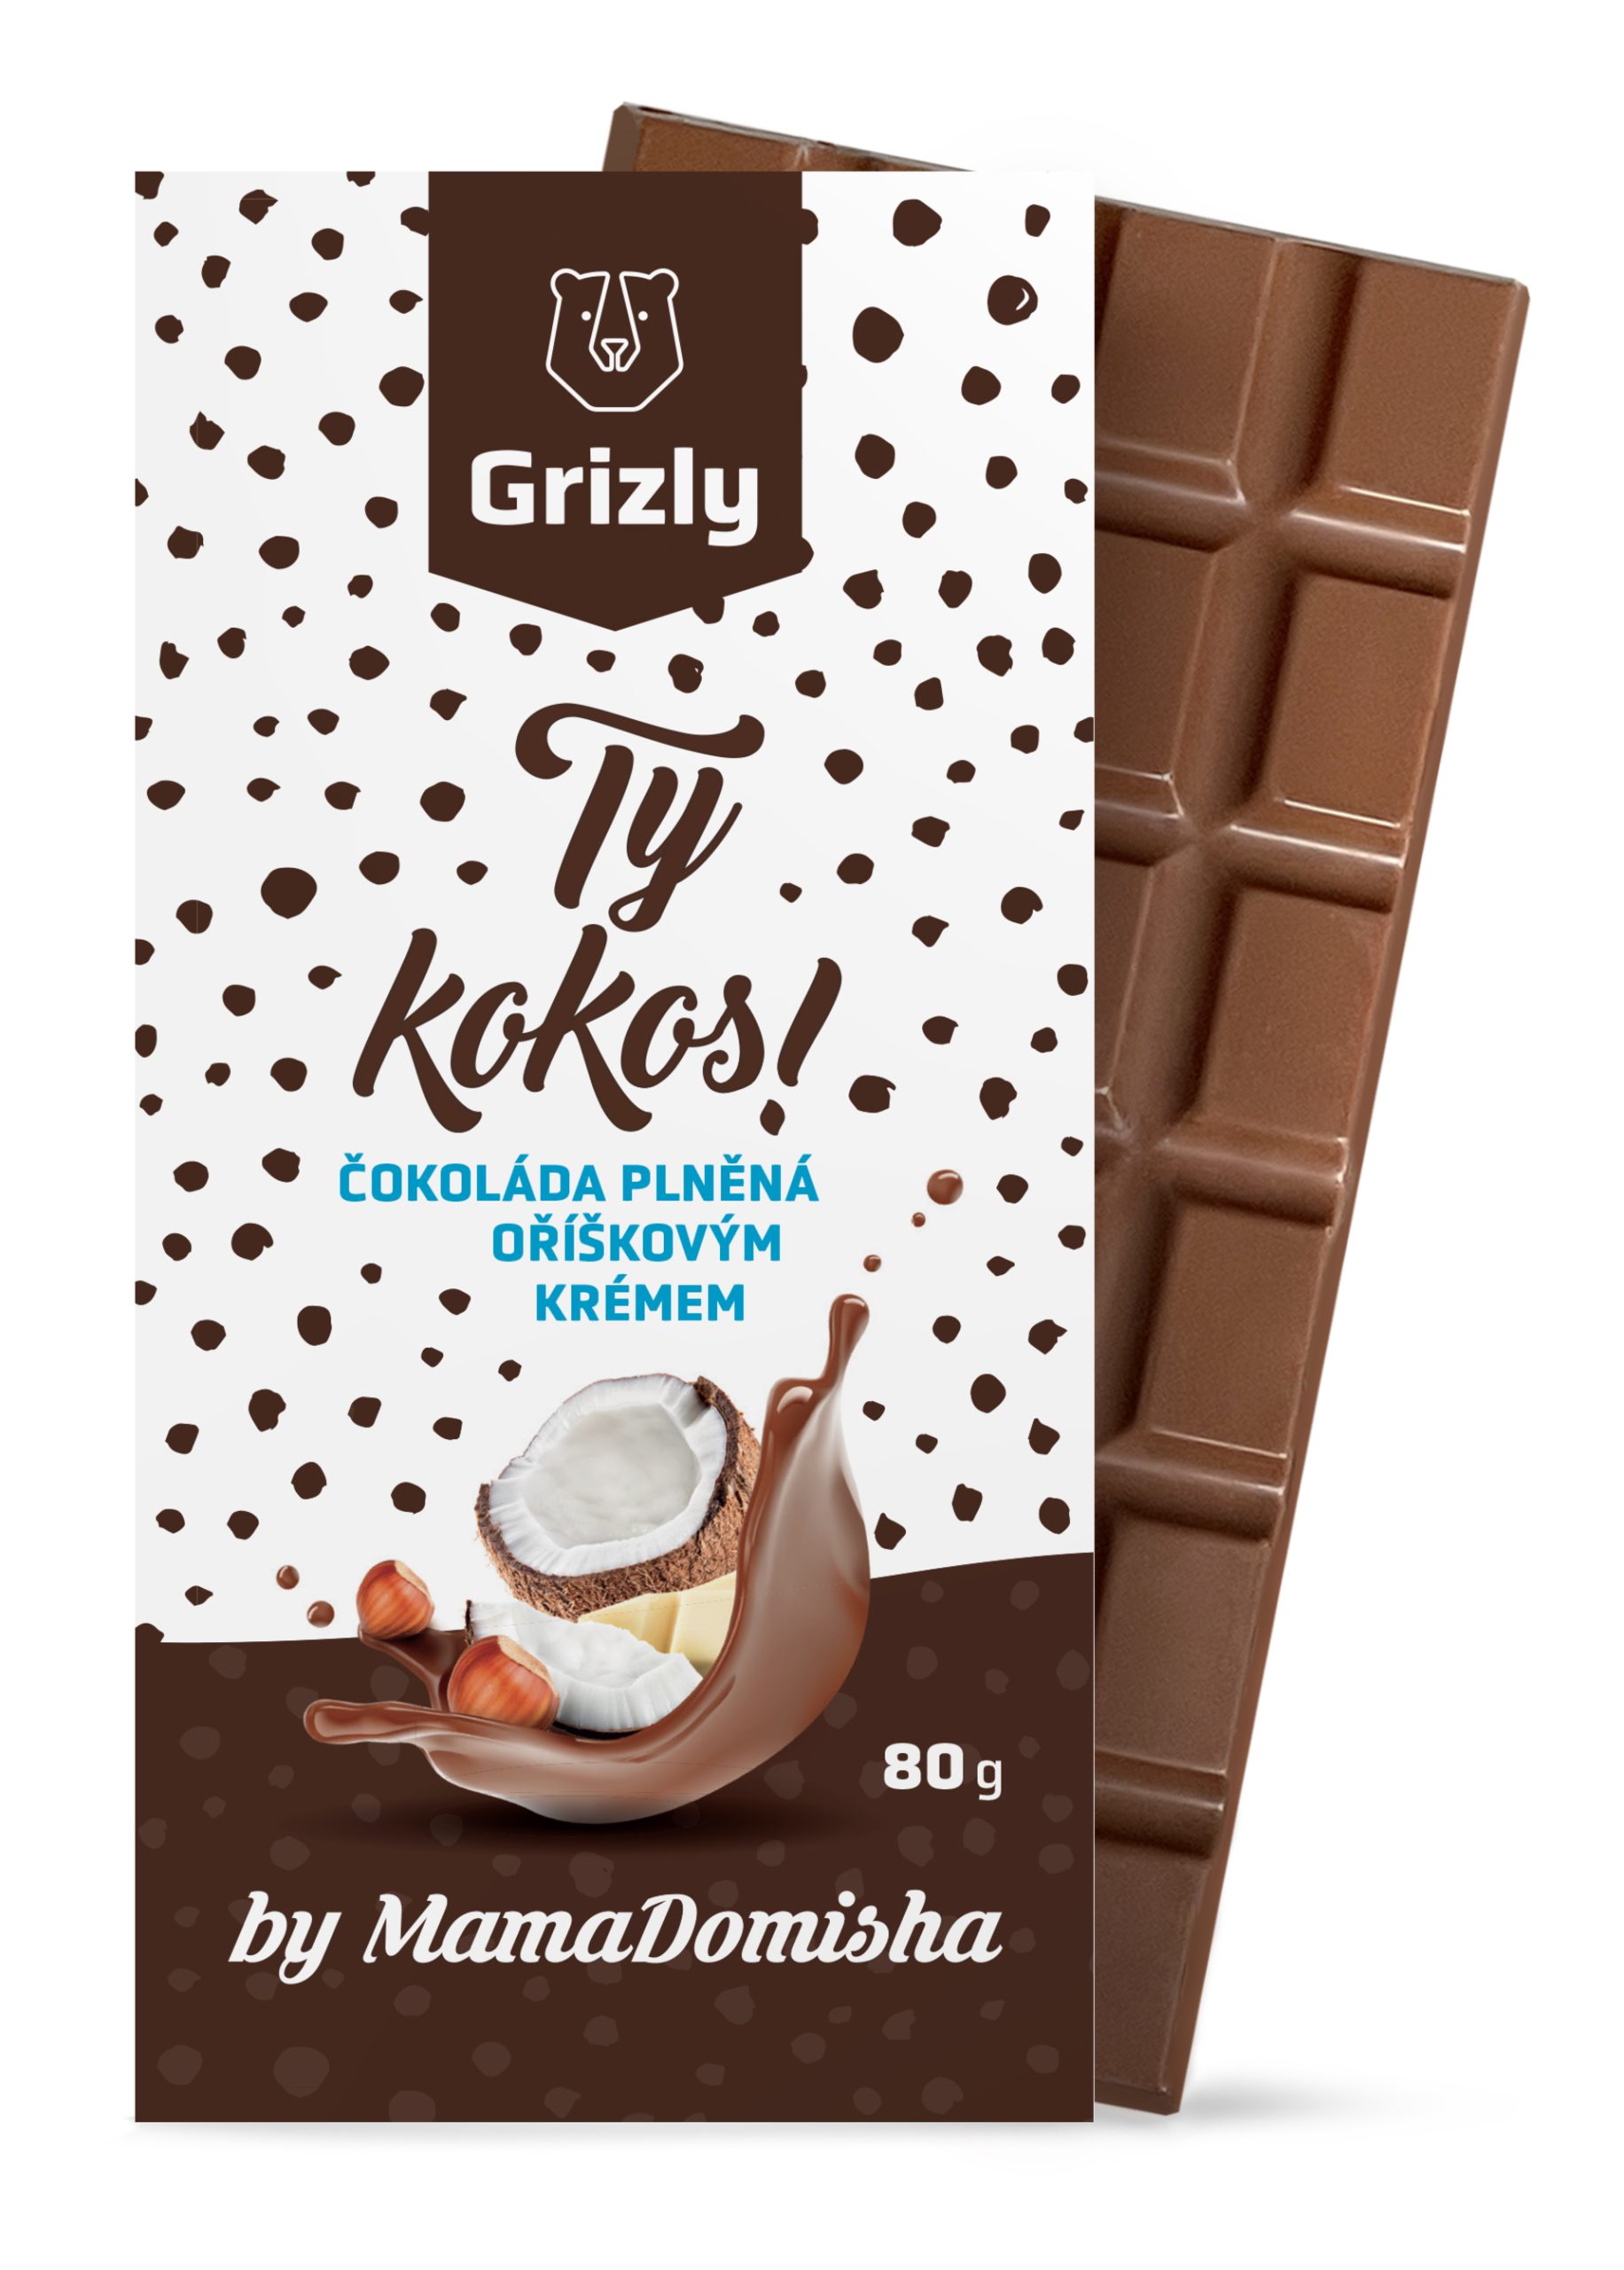 GRIZLY Mléčná čokoláda plněná oříškovým krémem Ty kokos! by @mamadomisha 80 g - 5+1 zdarma